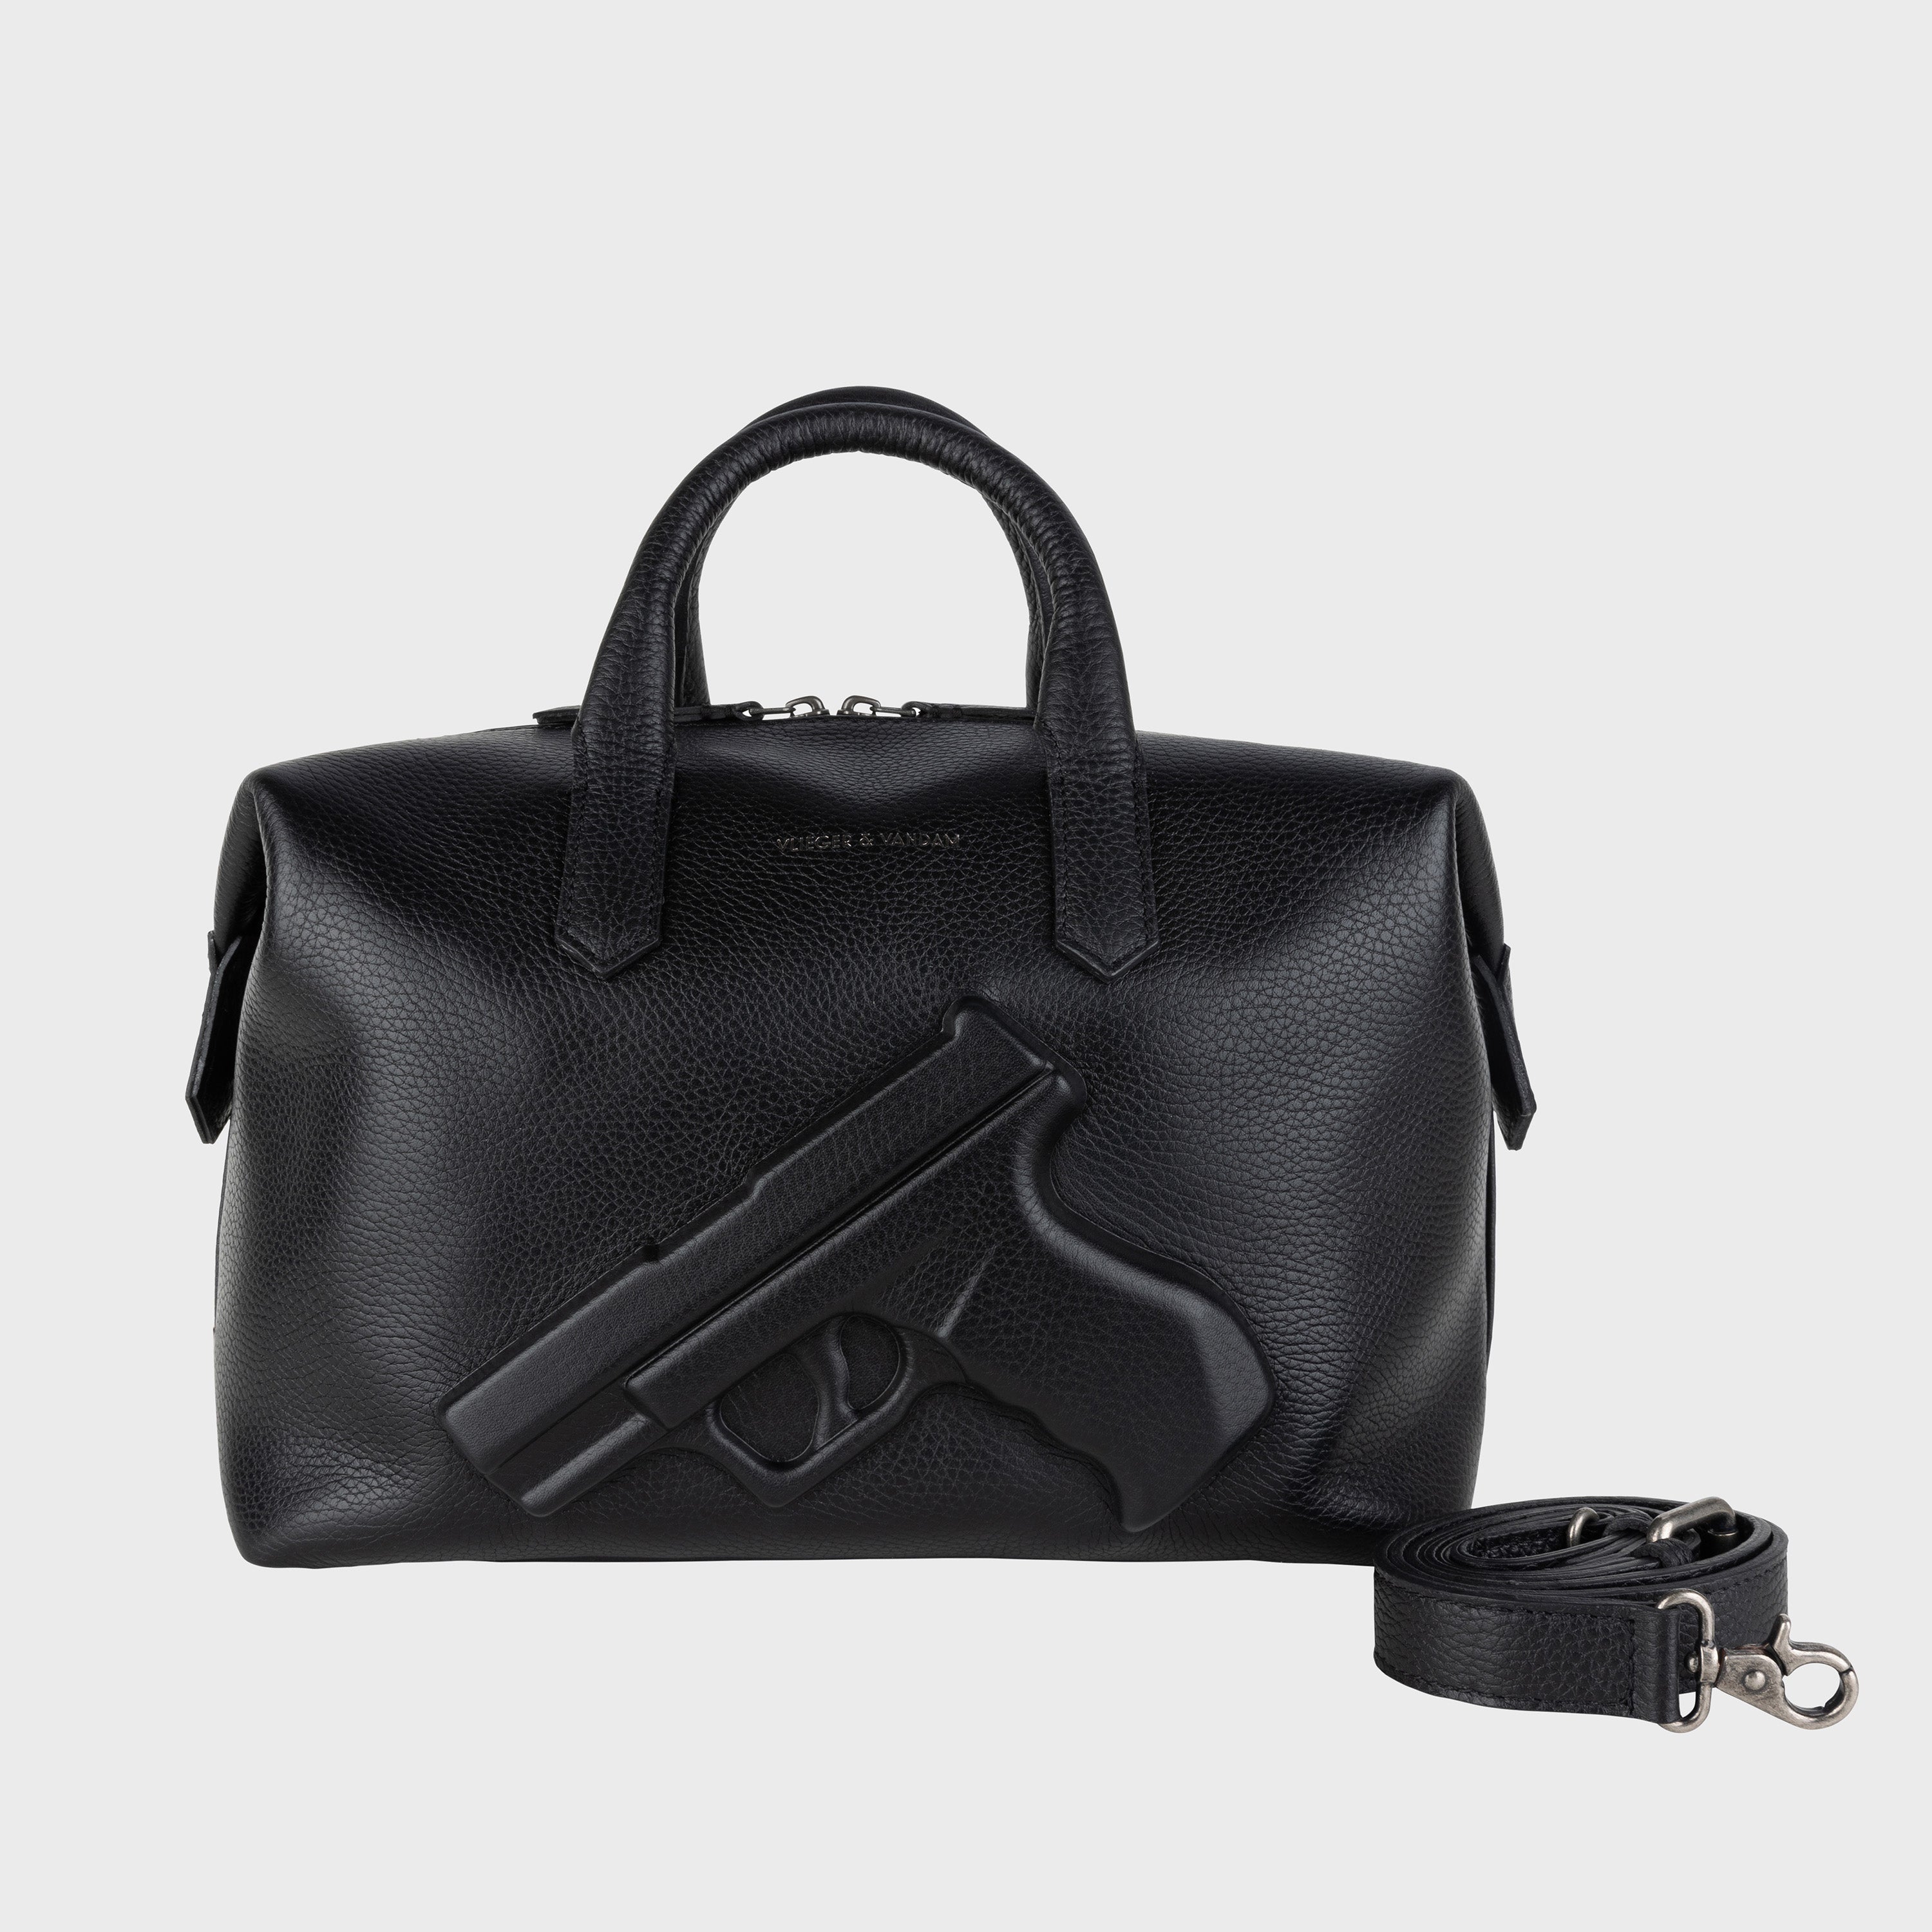 Vlieger & Vandam - Gun Belt Bag Black, embossed leather gun bag